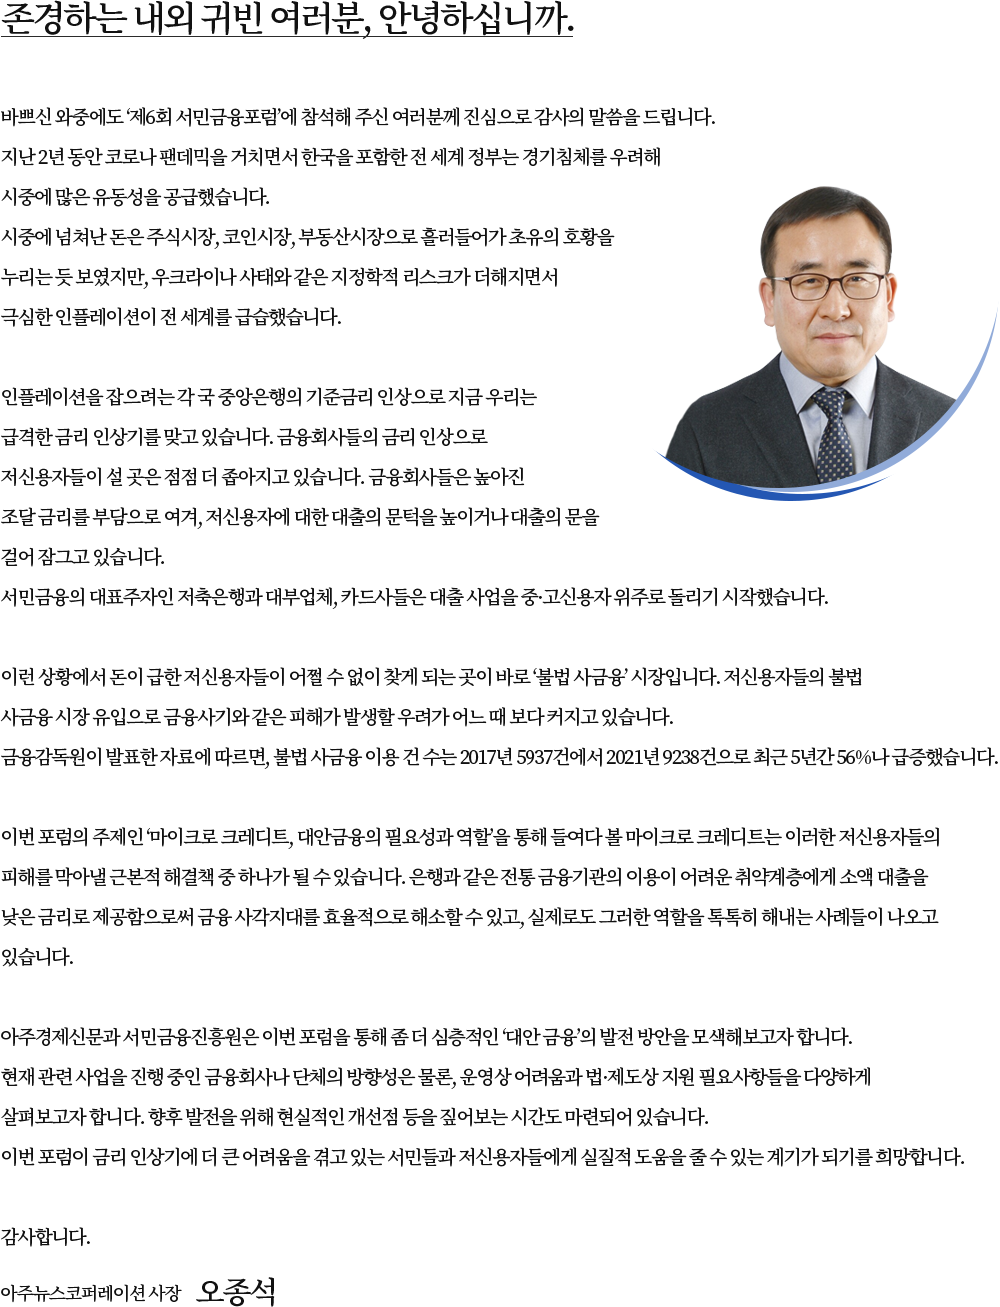 아주뉴스코퍼레이션 사장 오종석